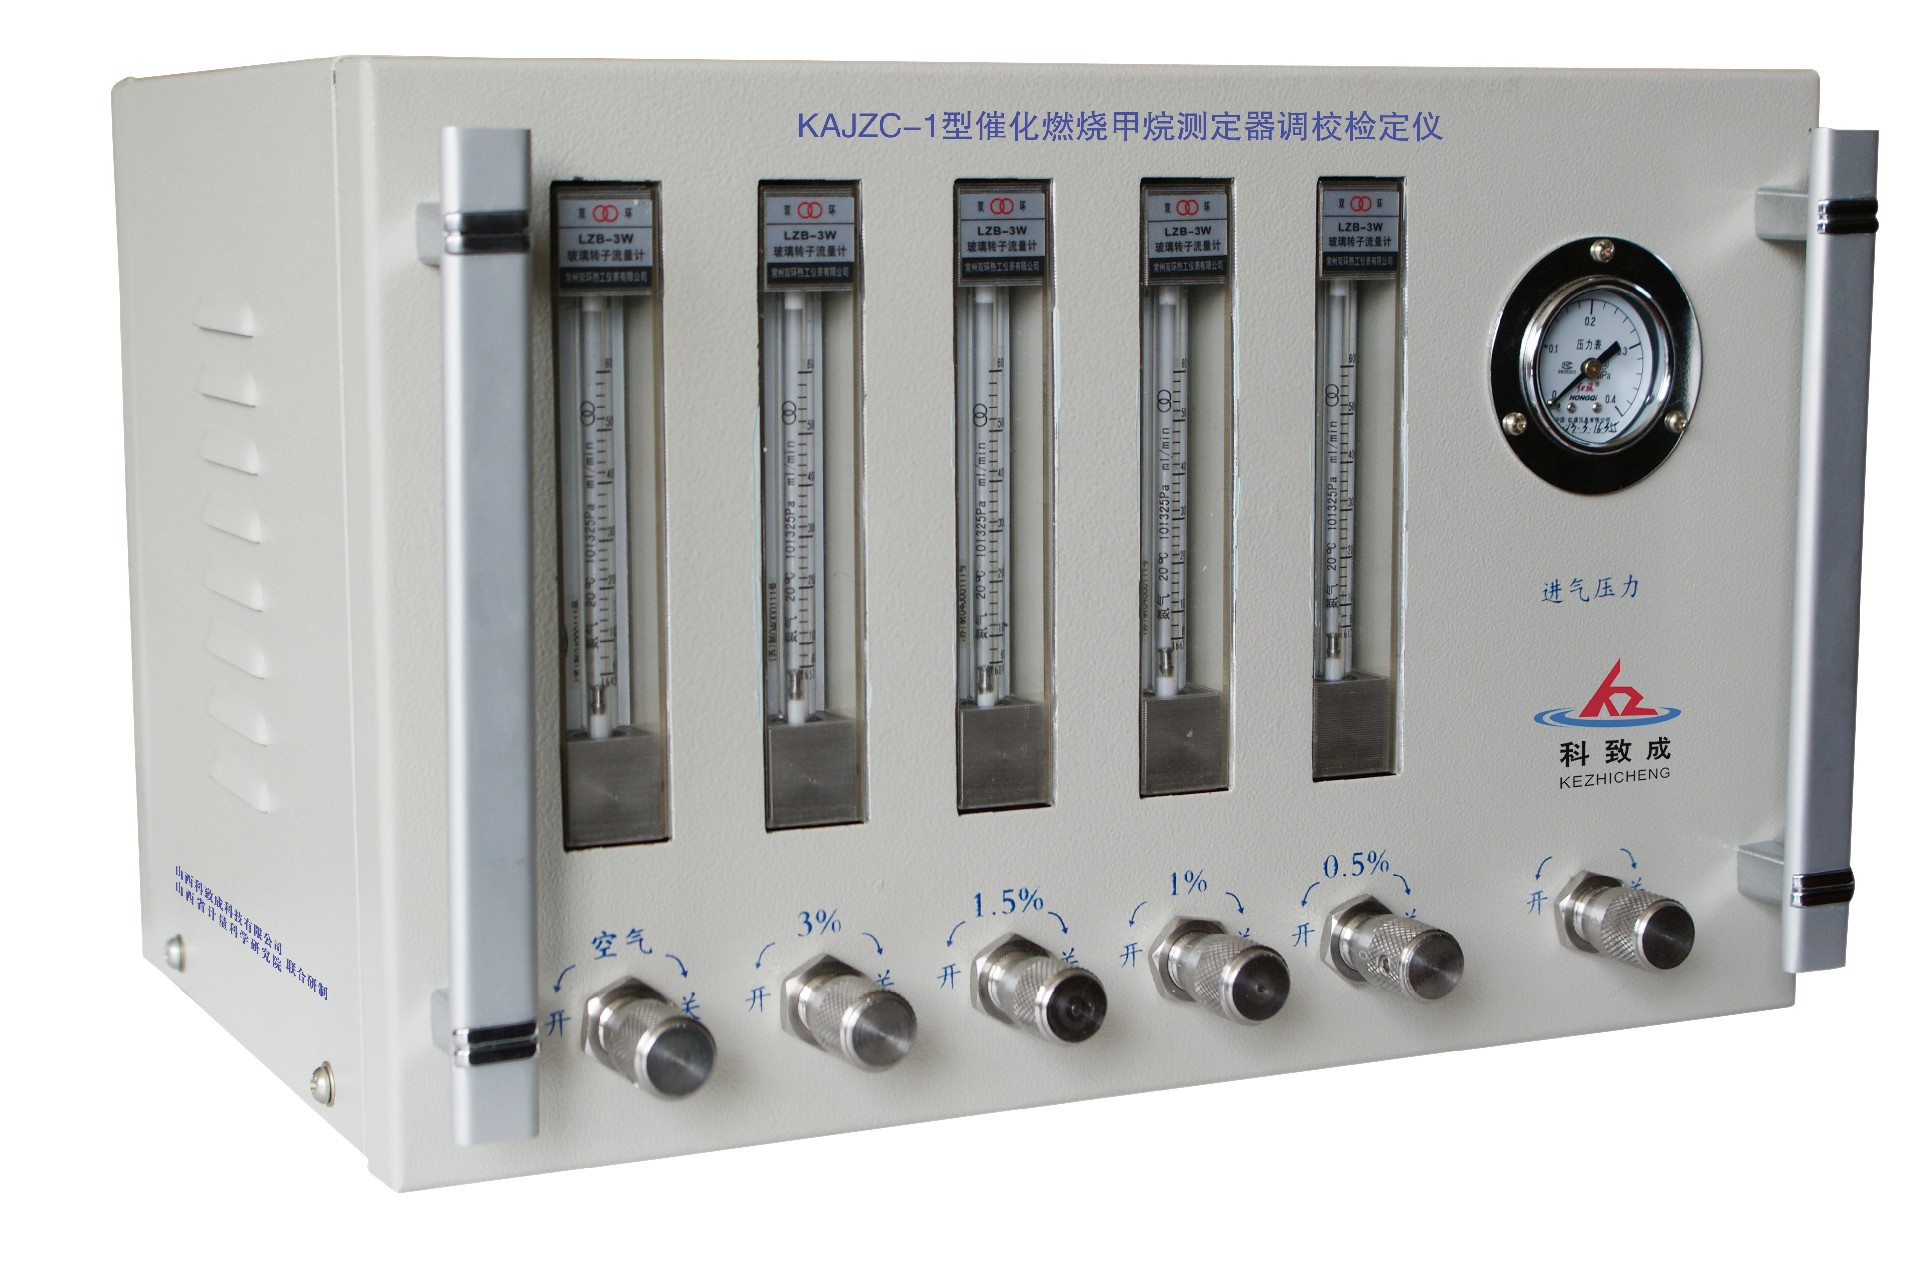 张家口KAJZC-1型催化燃烧甲烷测定器调校检定仪